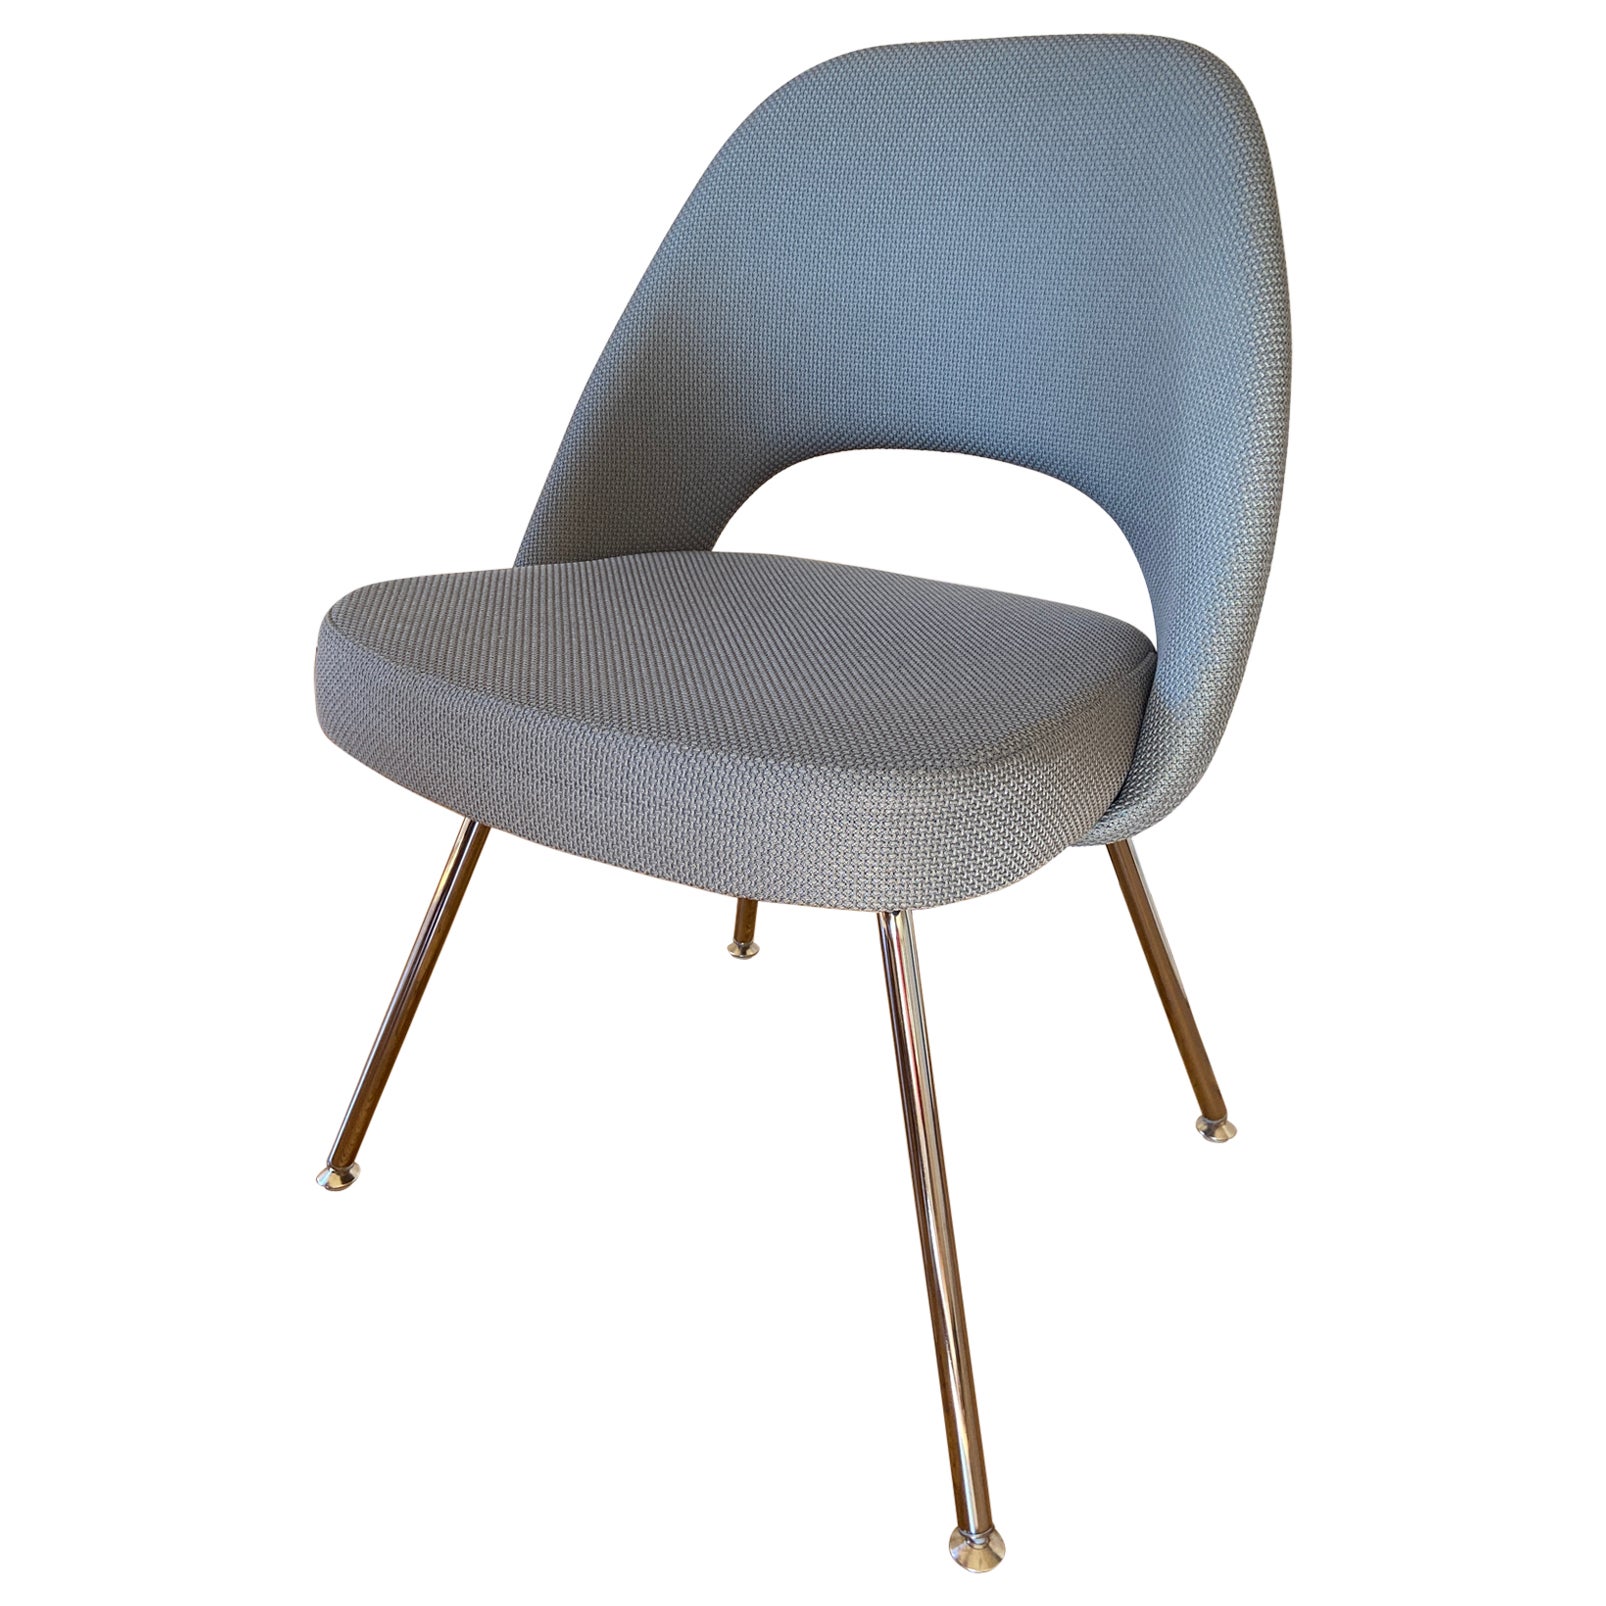 Saarinen Executive Armless Chair for Knoll in Gray Fabric, Chrome Tubular Legs